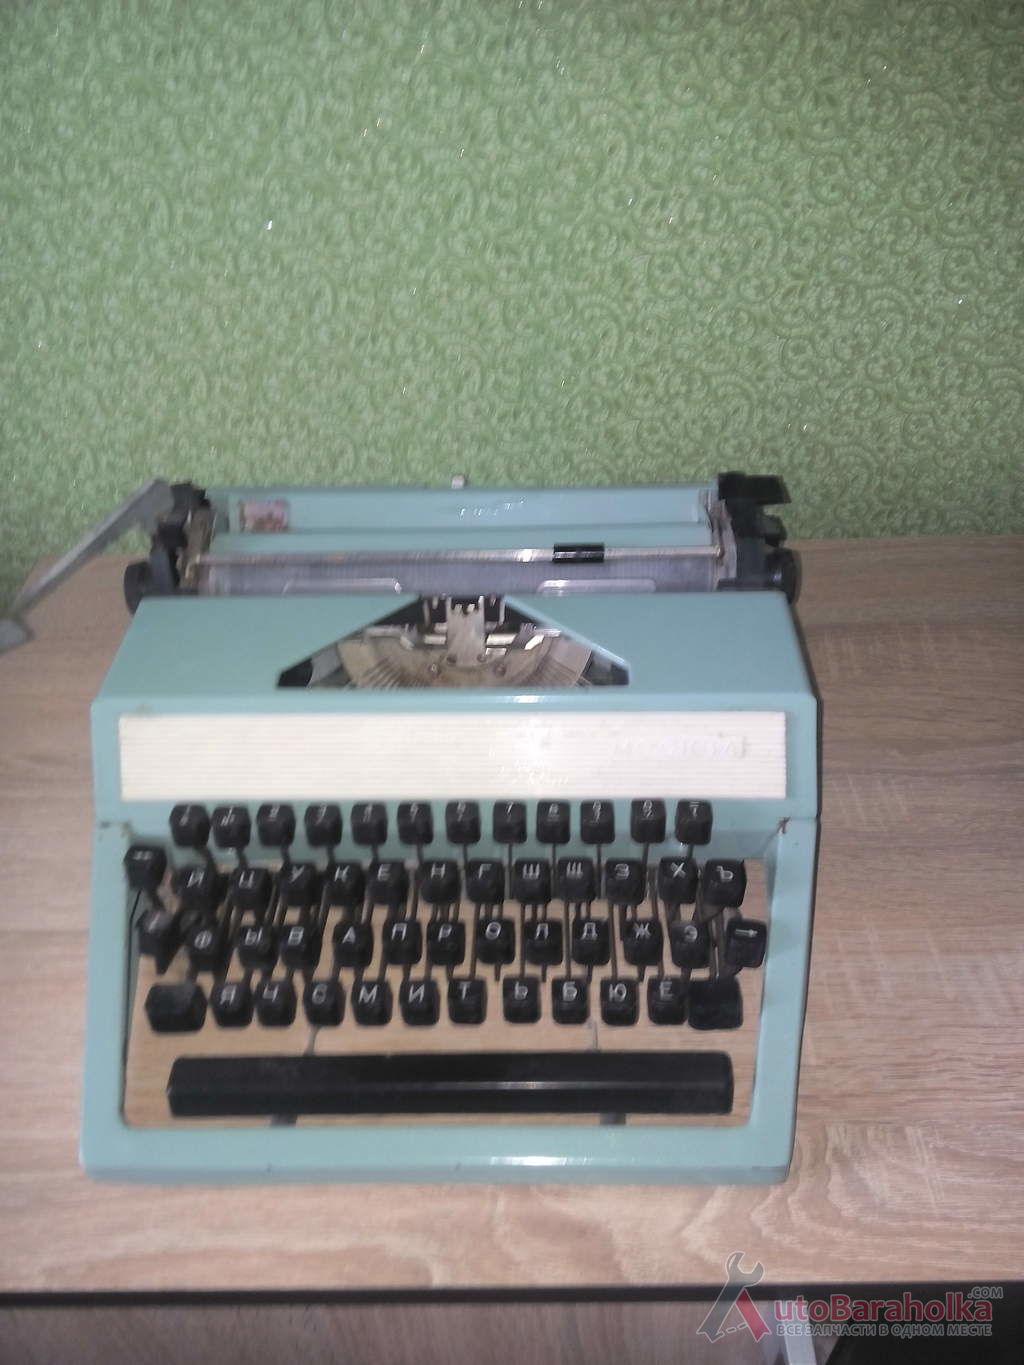 Продам Печатная машинка "Москва" 1971 г. в. В хорошем состоянии, не эксплуатировалась, имеет ленту Миргород